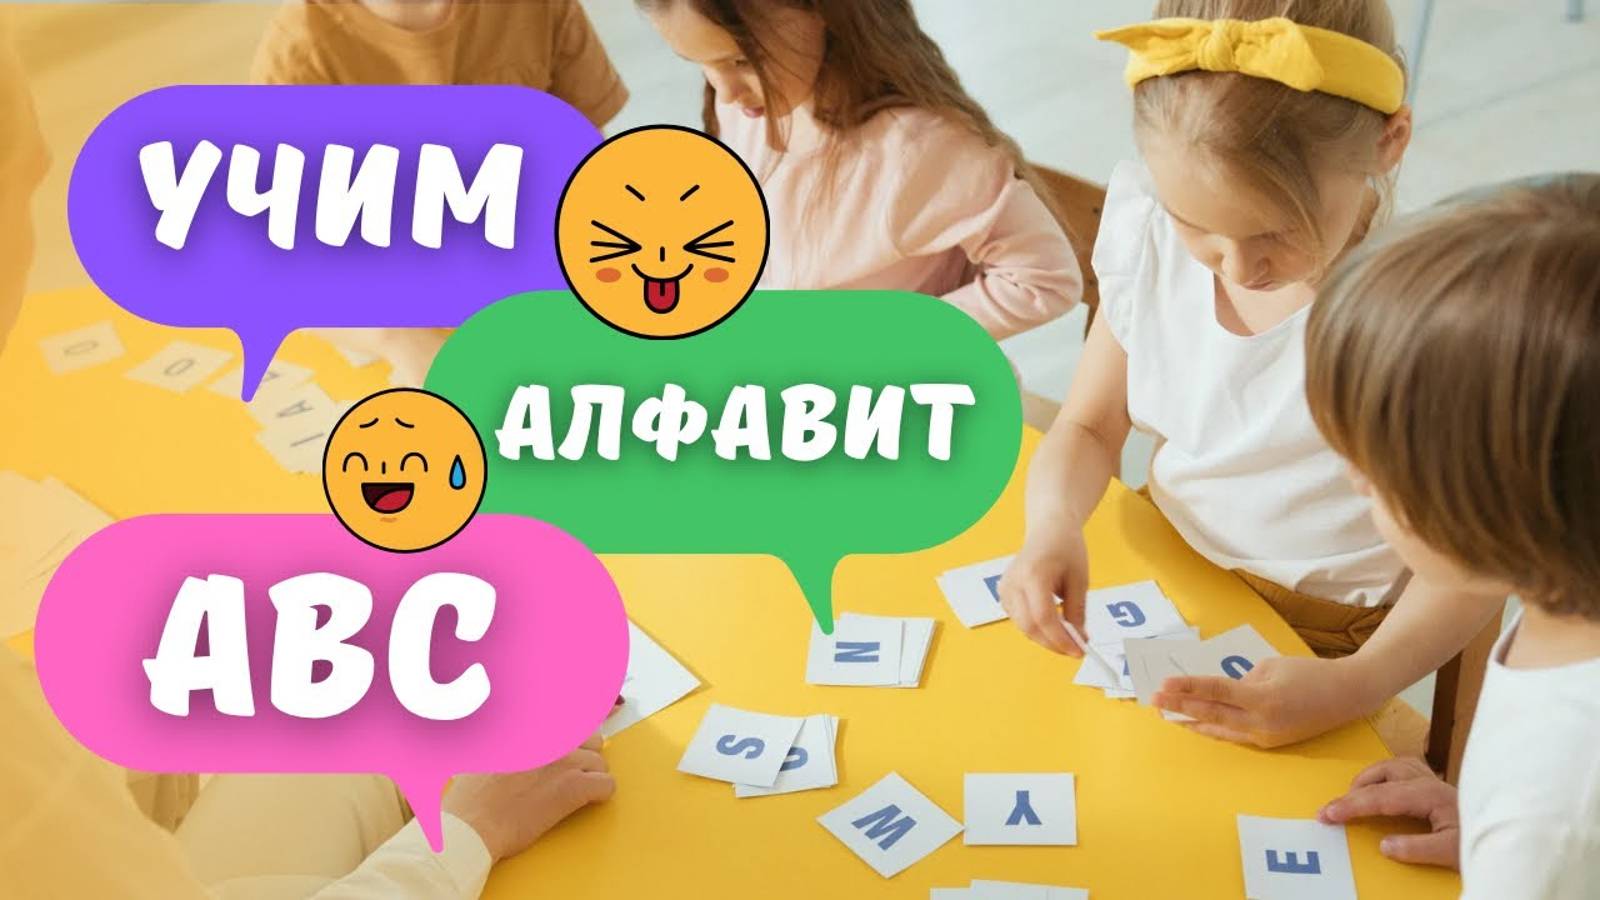 Учим Английский алфавит! Песня ABC / Английские буквы для детей Видеокурс ABC Английский Алфавит